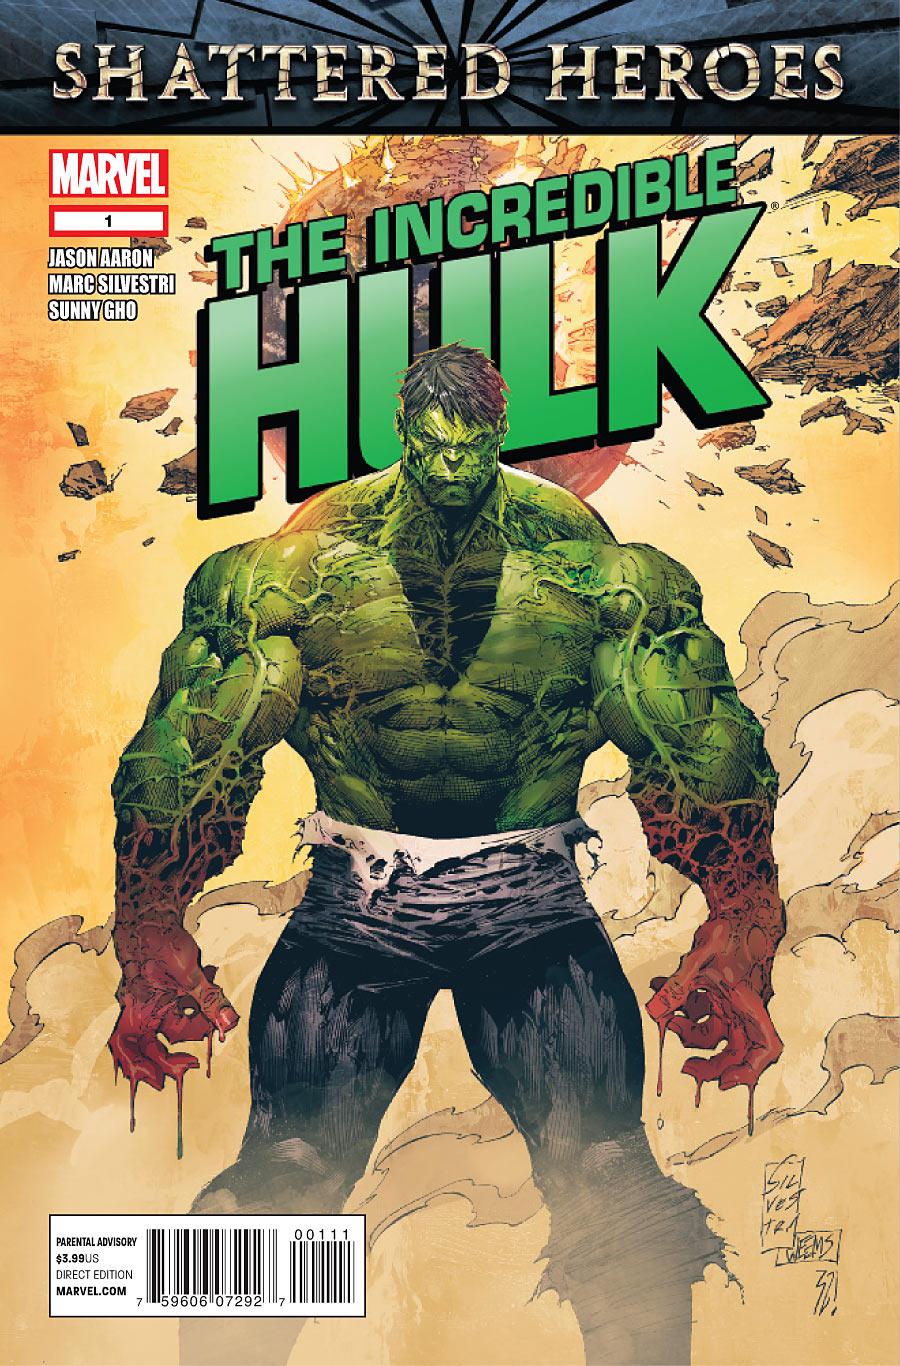 The Incredible Hulk Vol. 3 #1